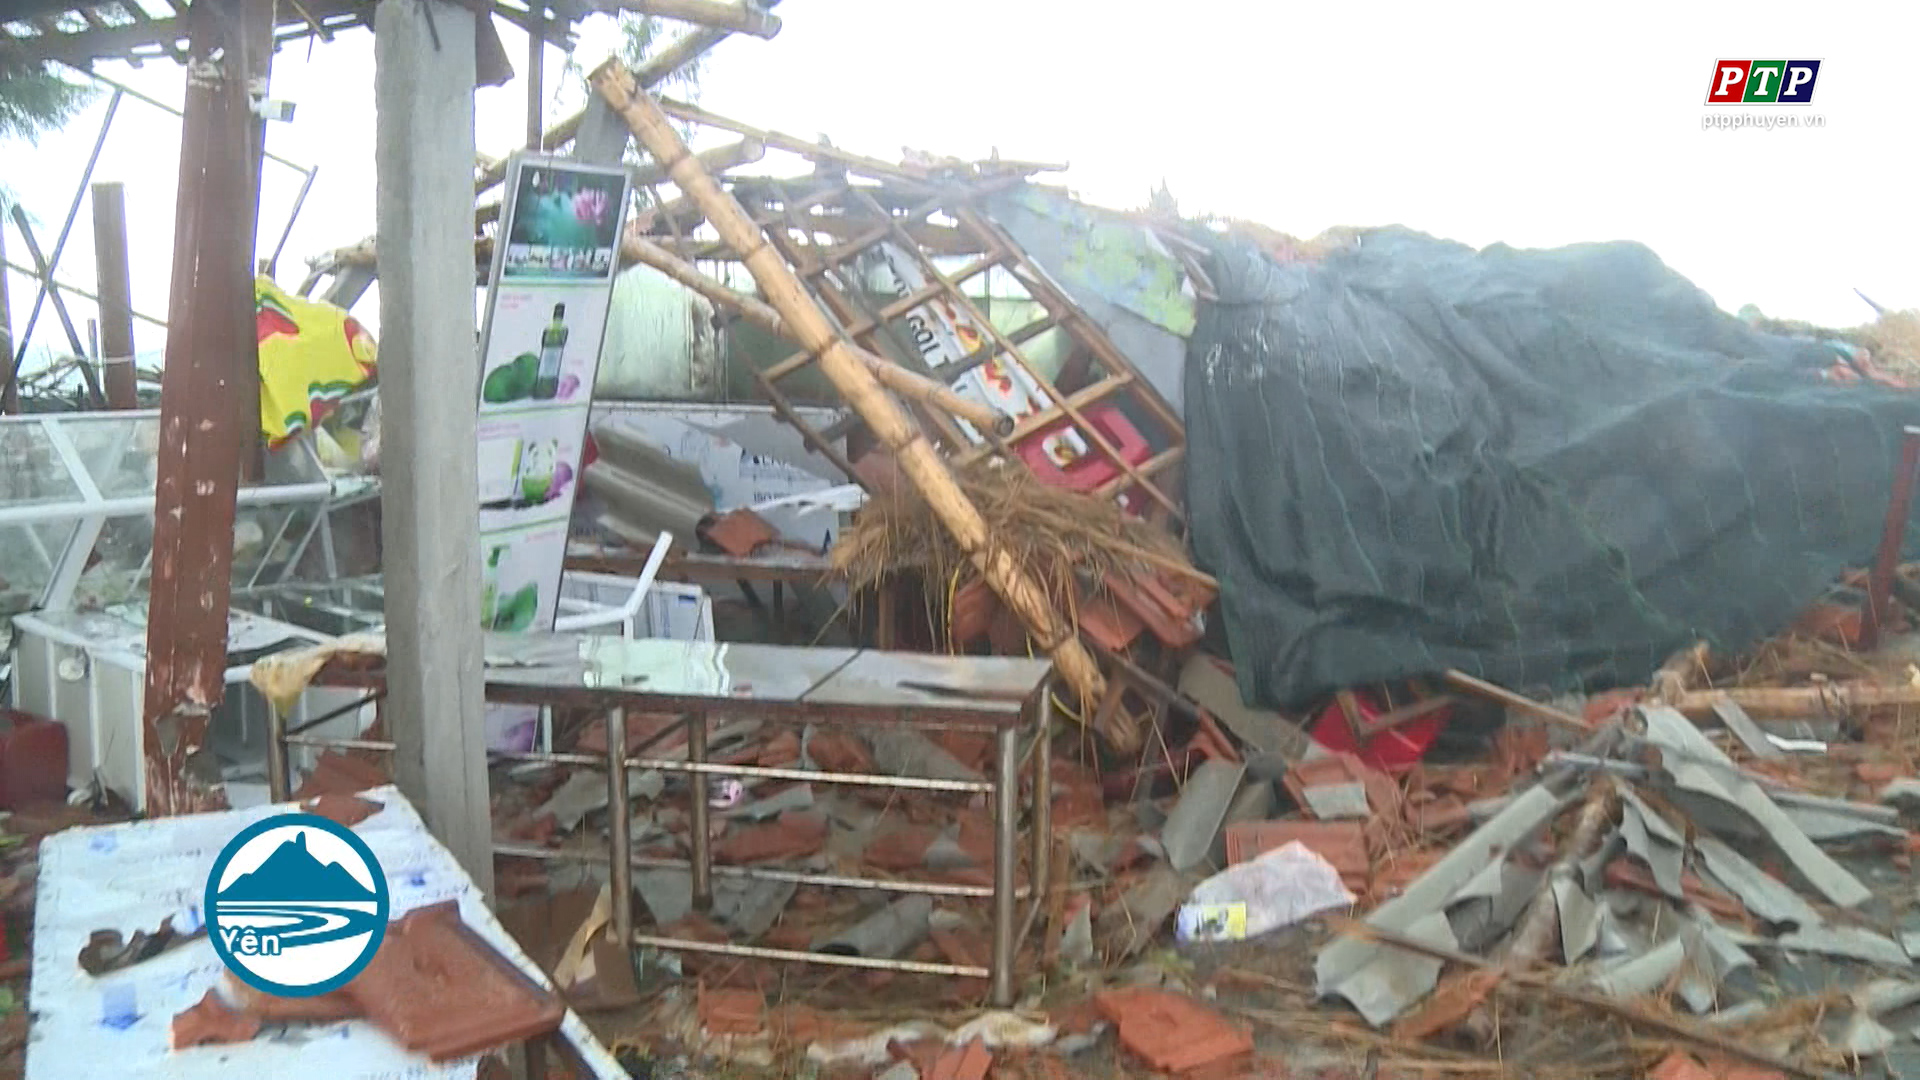 Phú Yên: Lốc xoáy gây sập nhà, 19 người bị thương